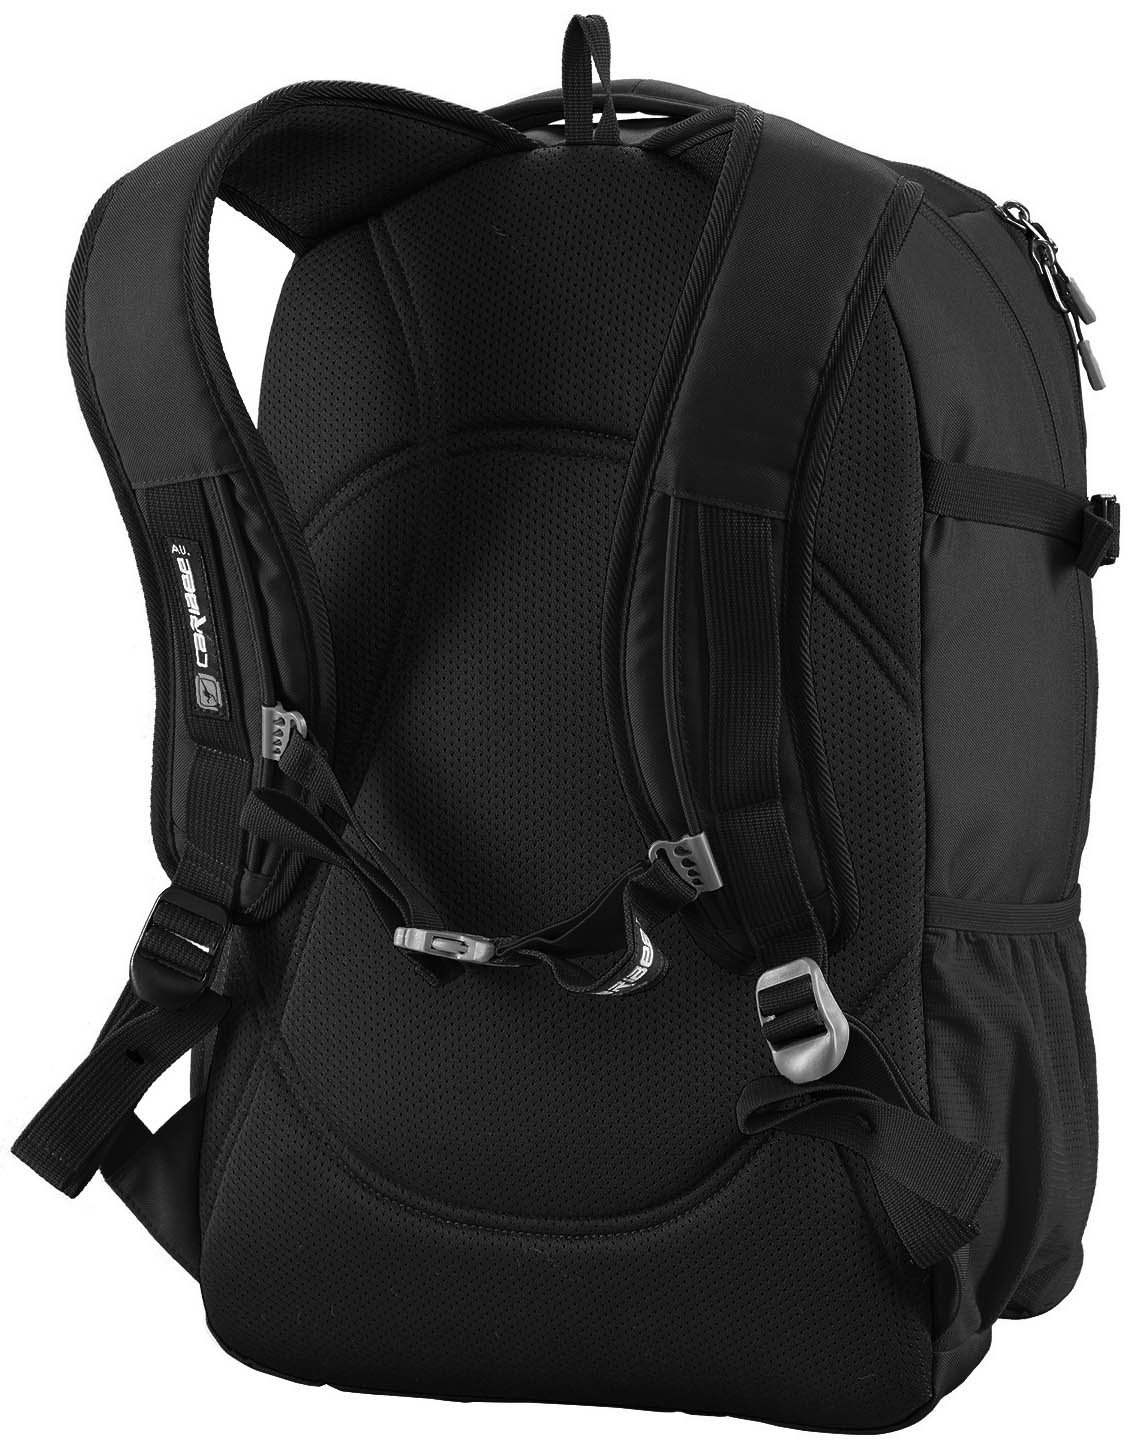 Caribee College 30L Backpack - Black